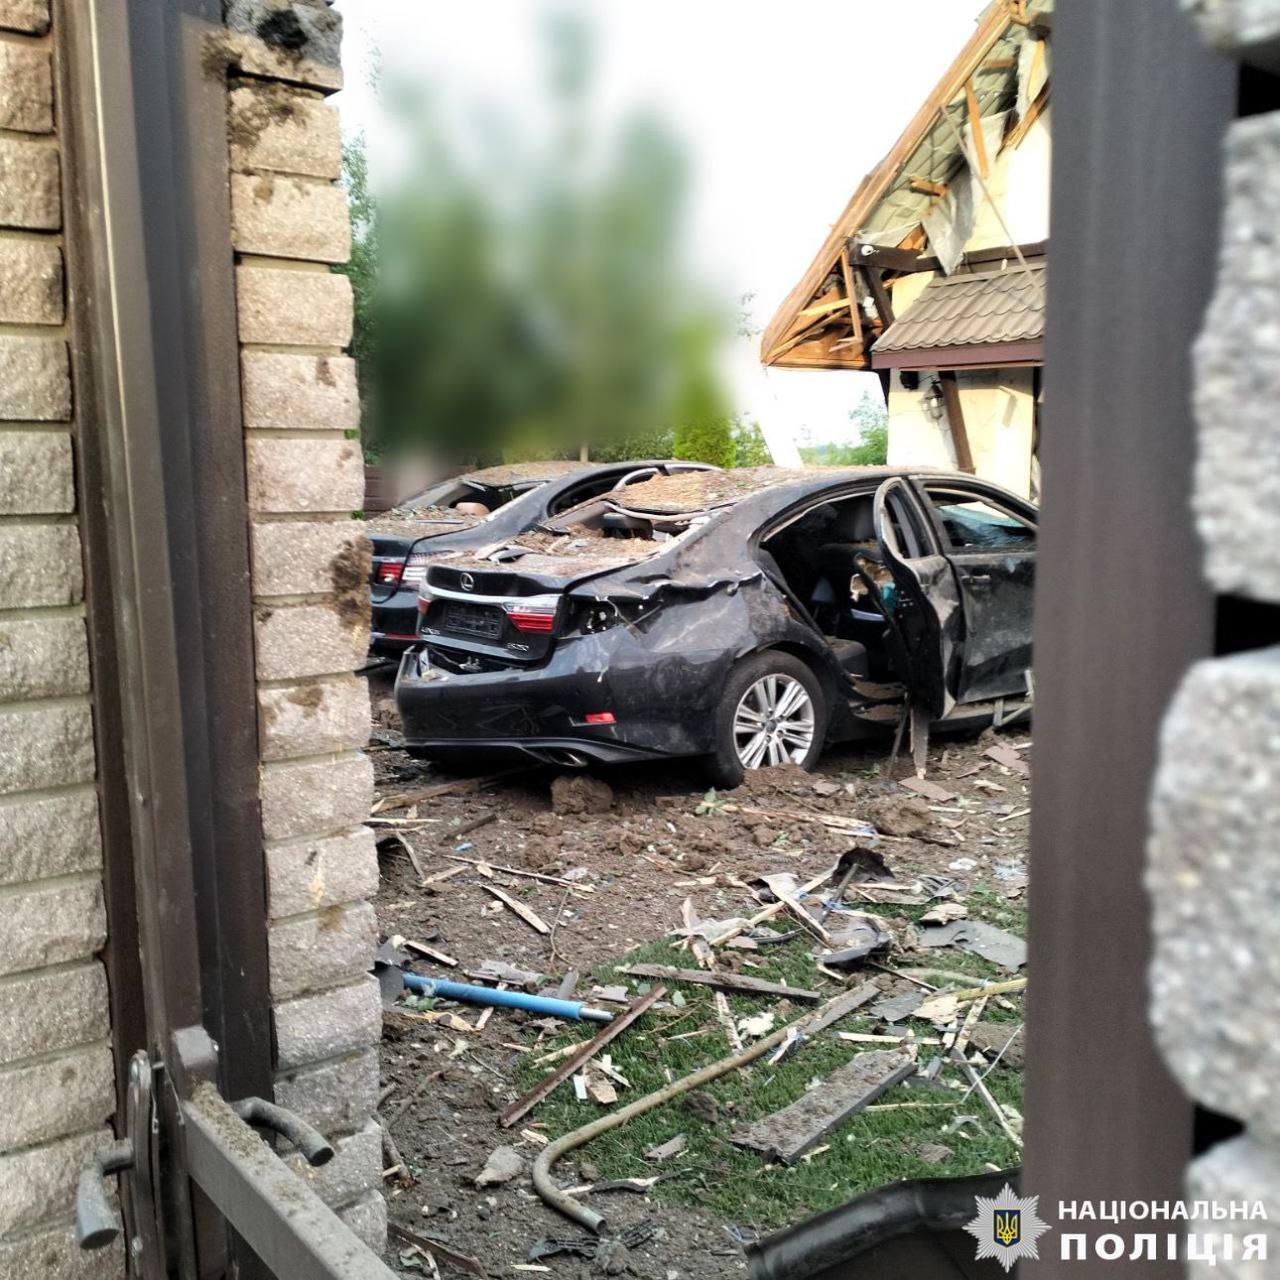 Есть пострадавшие, повреждены дома: последствия ракетной атаки в Киевской области 23 июня. Все подробности, видео и фото